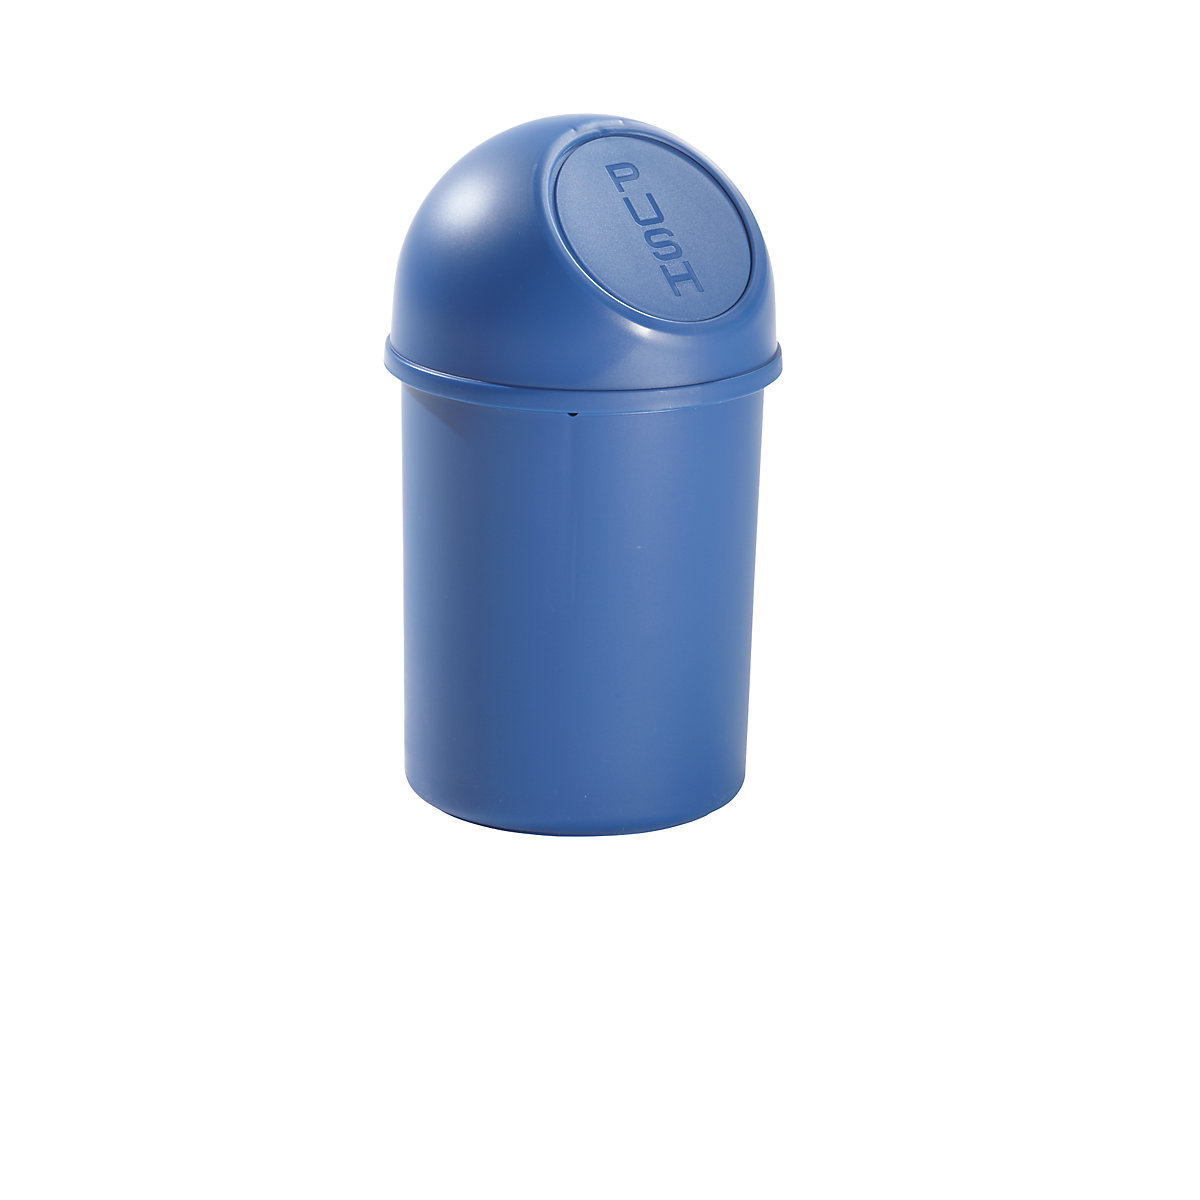 helit – Poubelle à trappe en plastique, capacité 6 l, h x Ø 375 x 216 mm, bleu, lot de 6